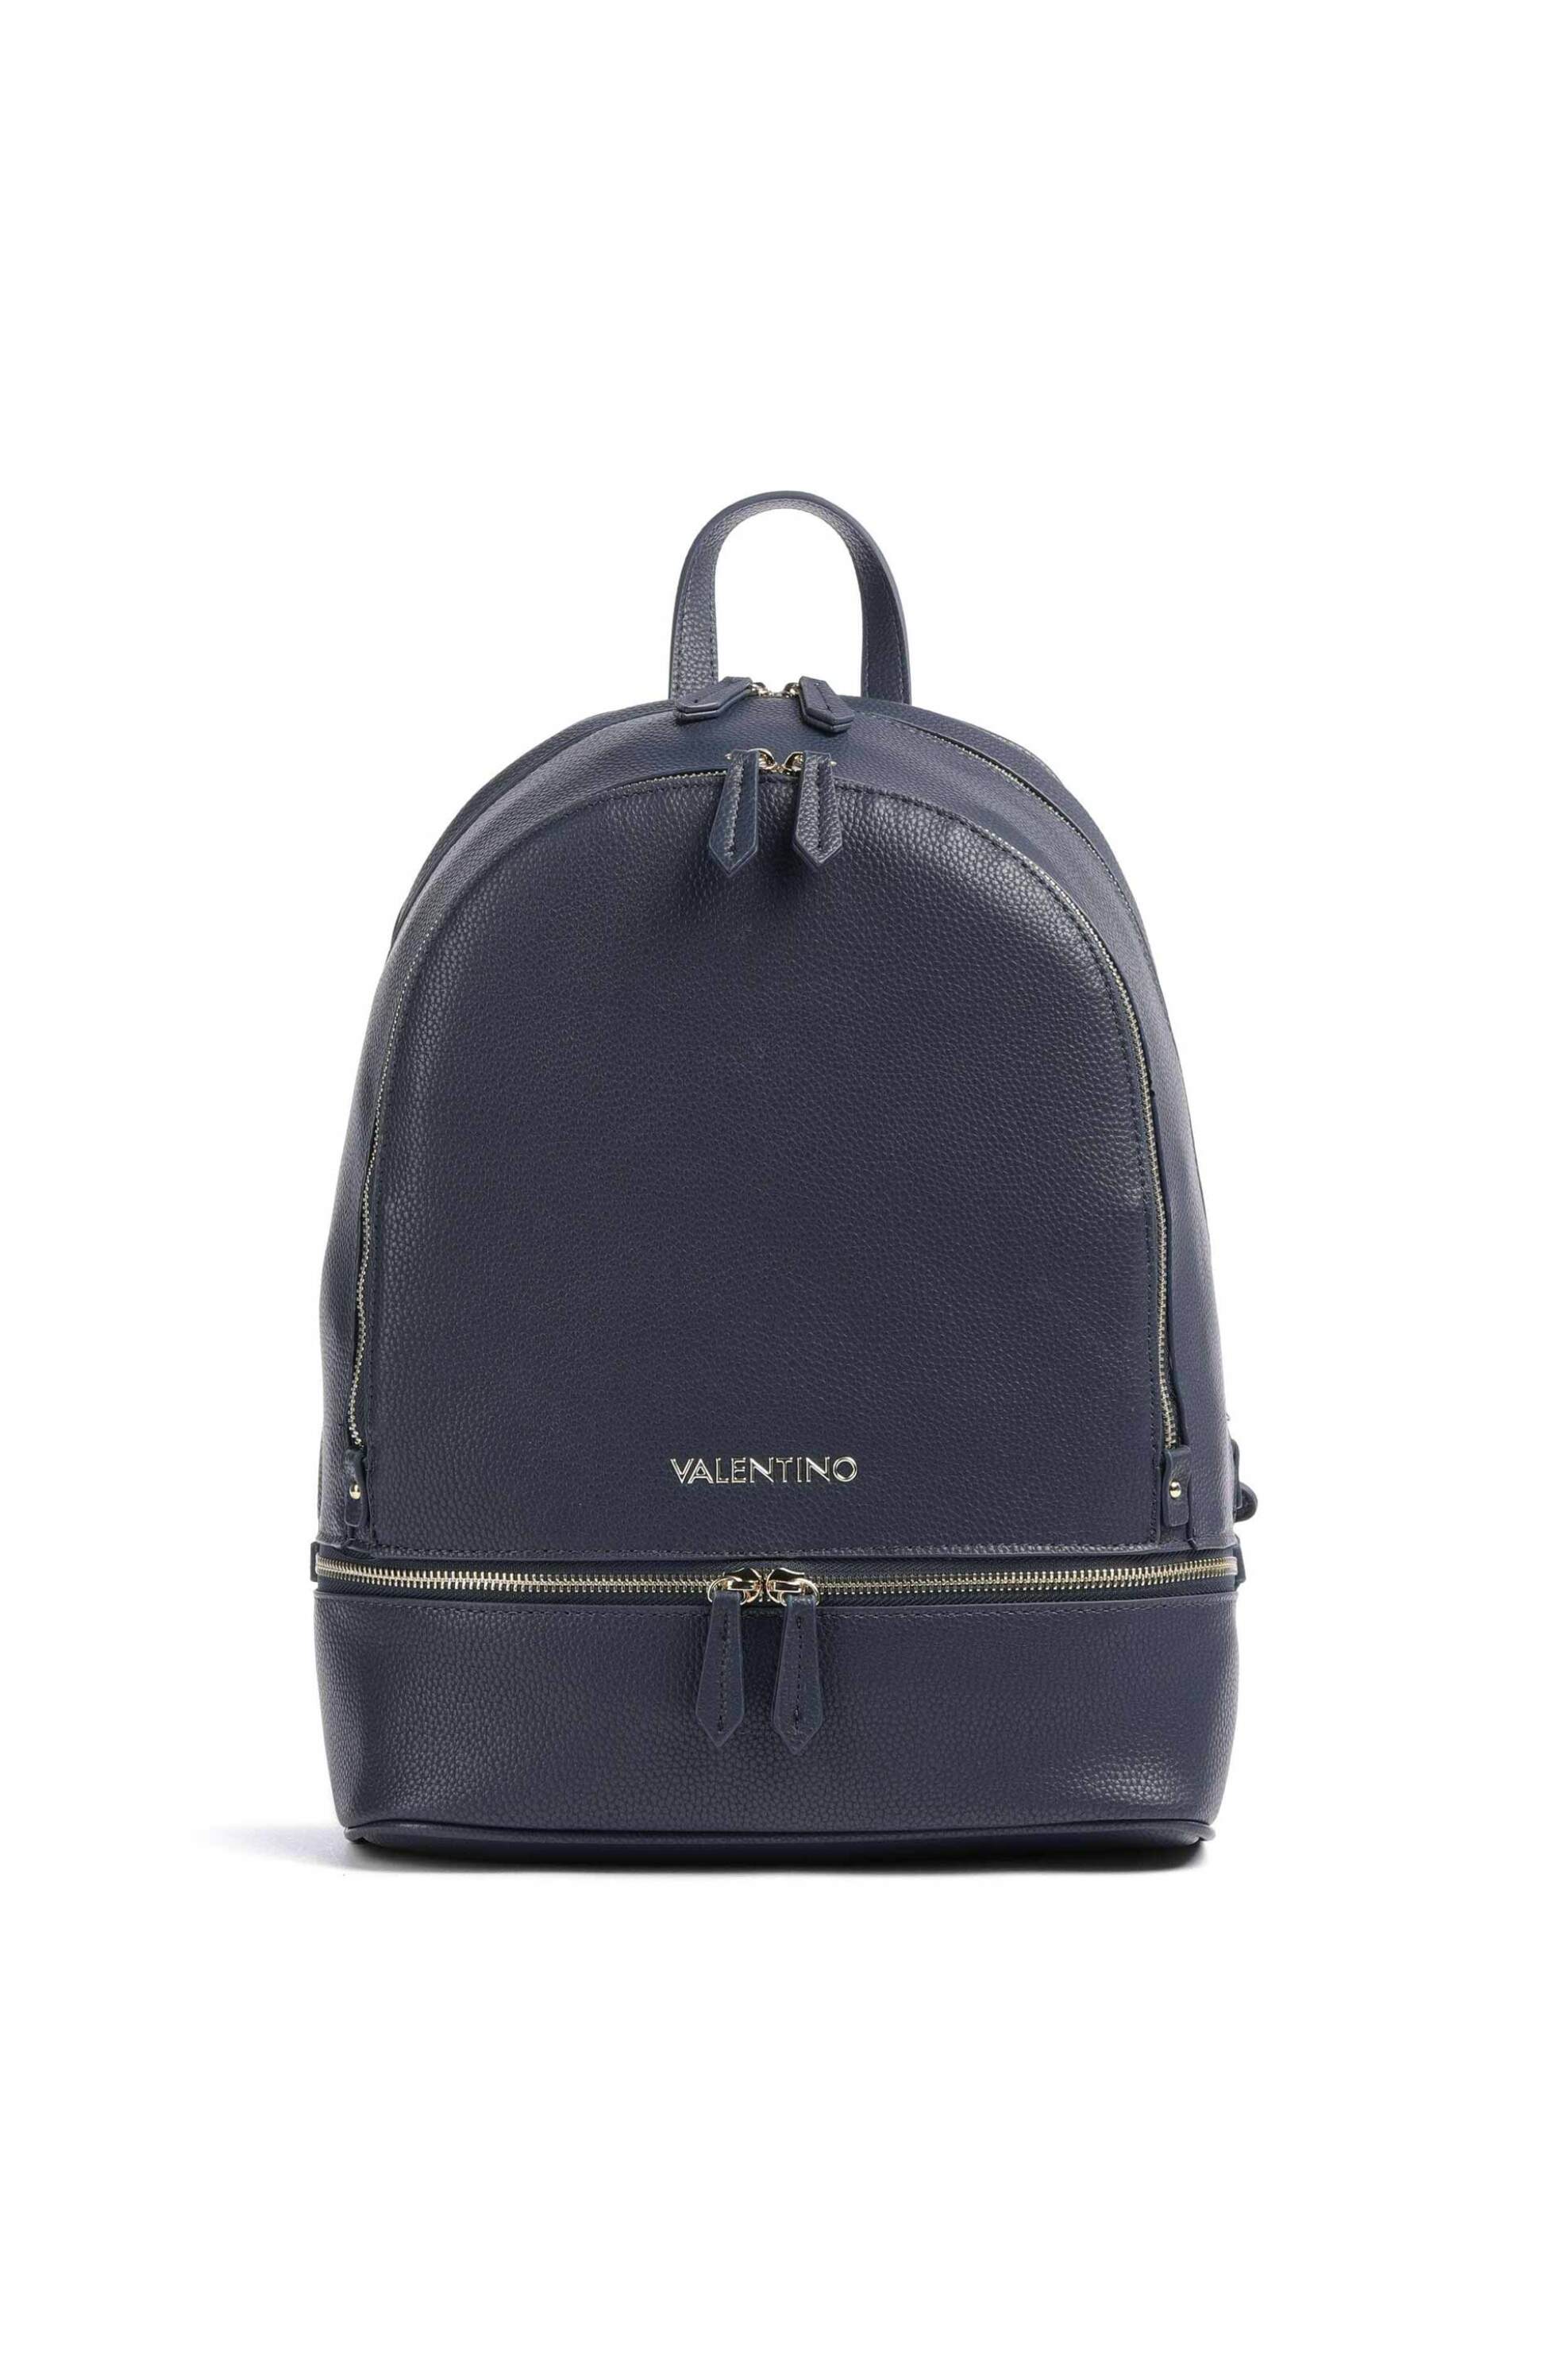 Γυναίκα > ΤΣΑΝΤΕΣ > Σακίδια & Backpacks Valentino γυναικείο backpack μονόχρωμο με πολλαπλές θήκες "Brixton" - 55KVBS7LX02/BRI Μπλε Σκούρο